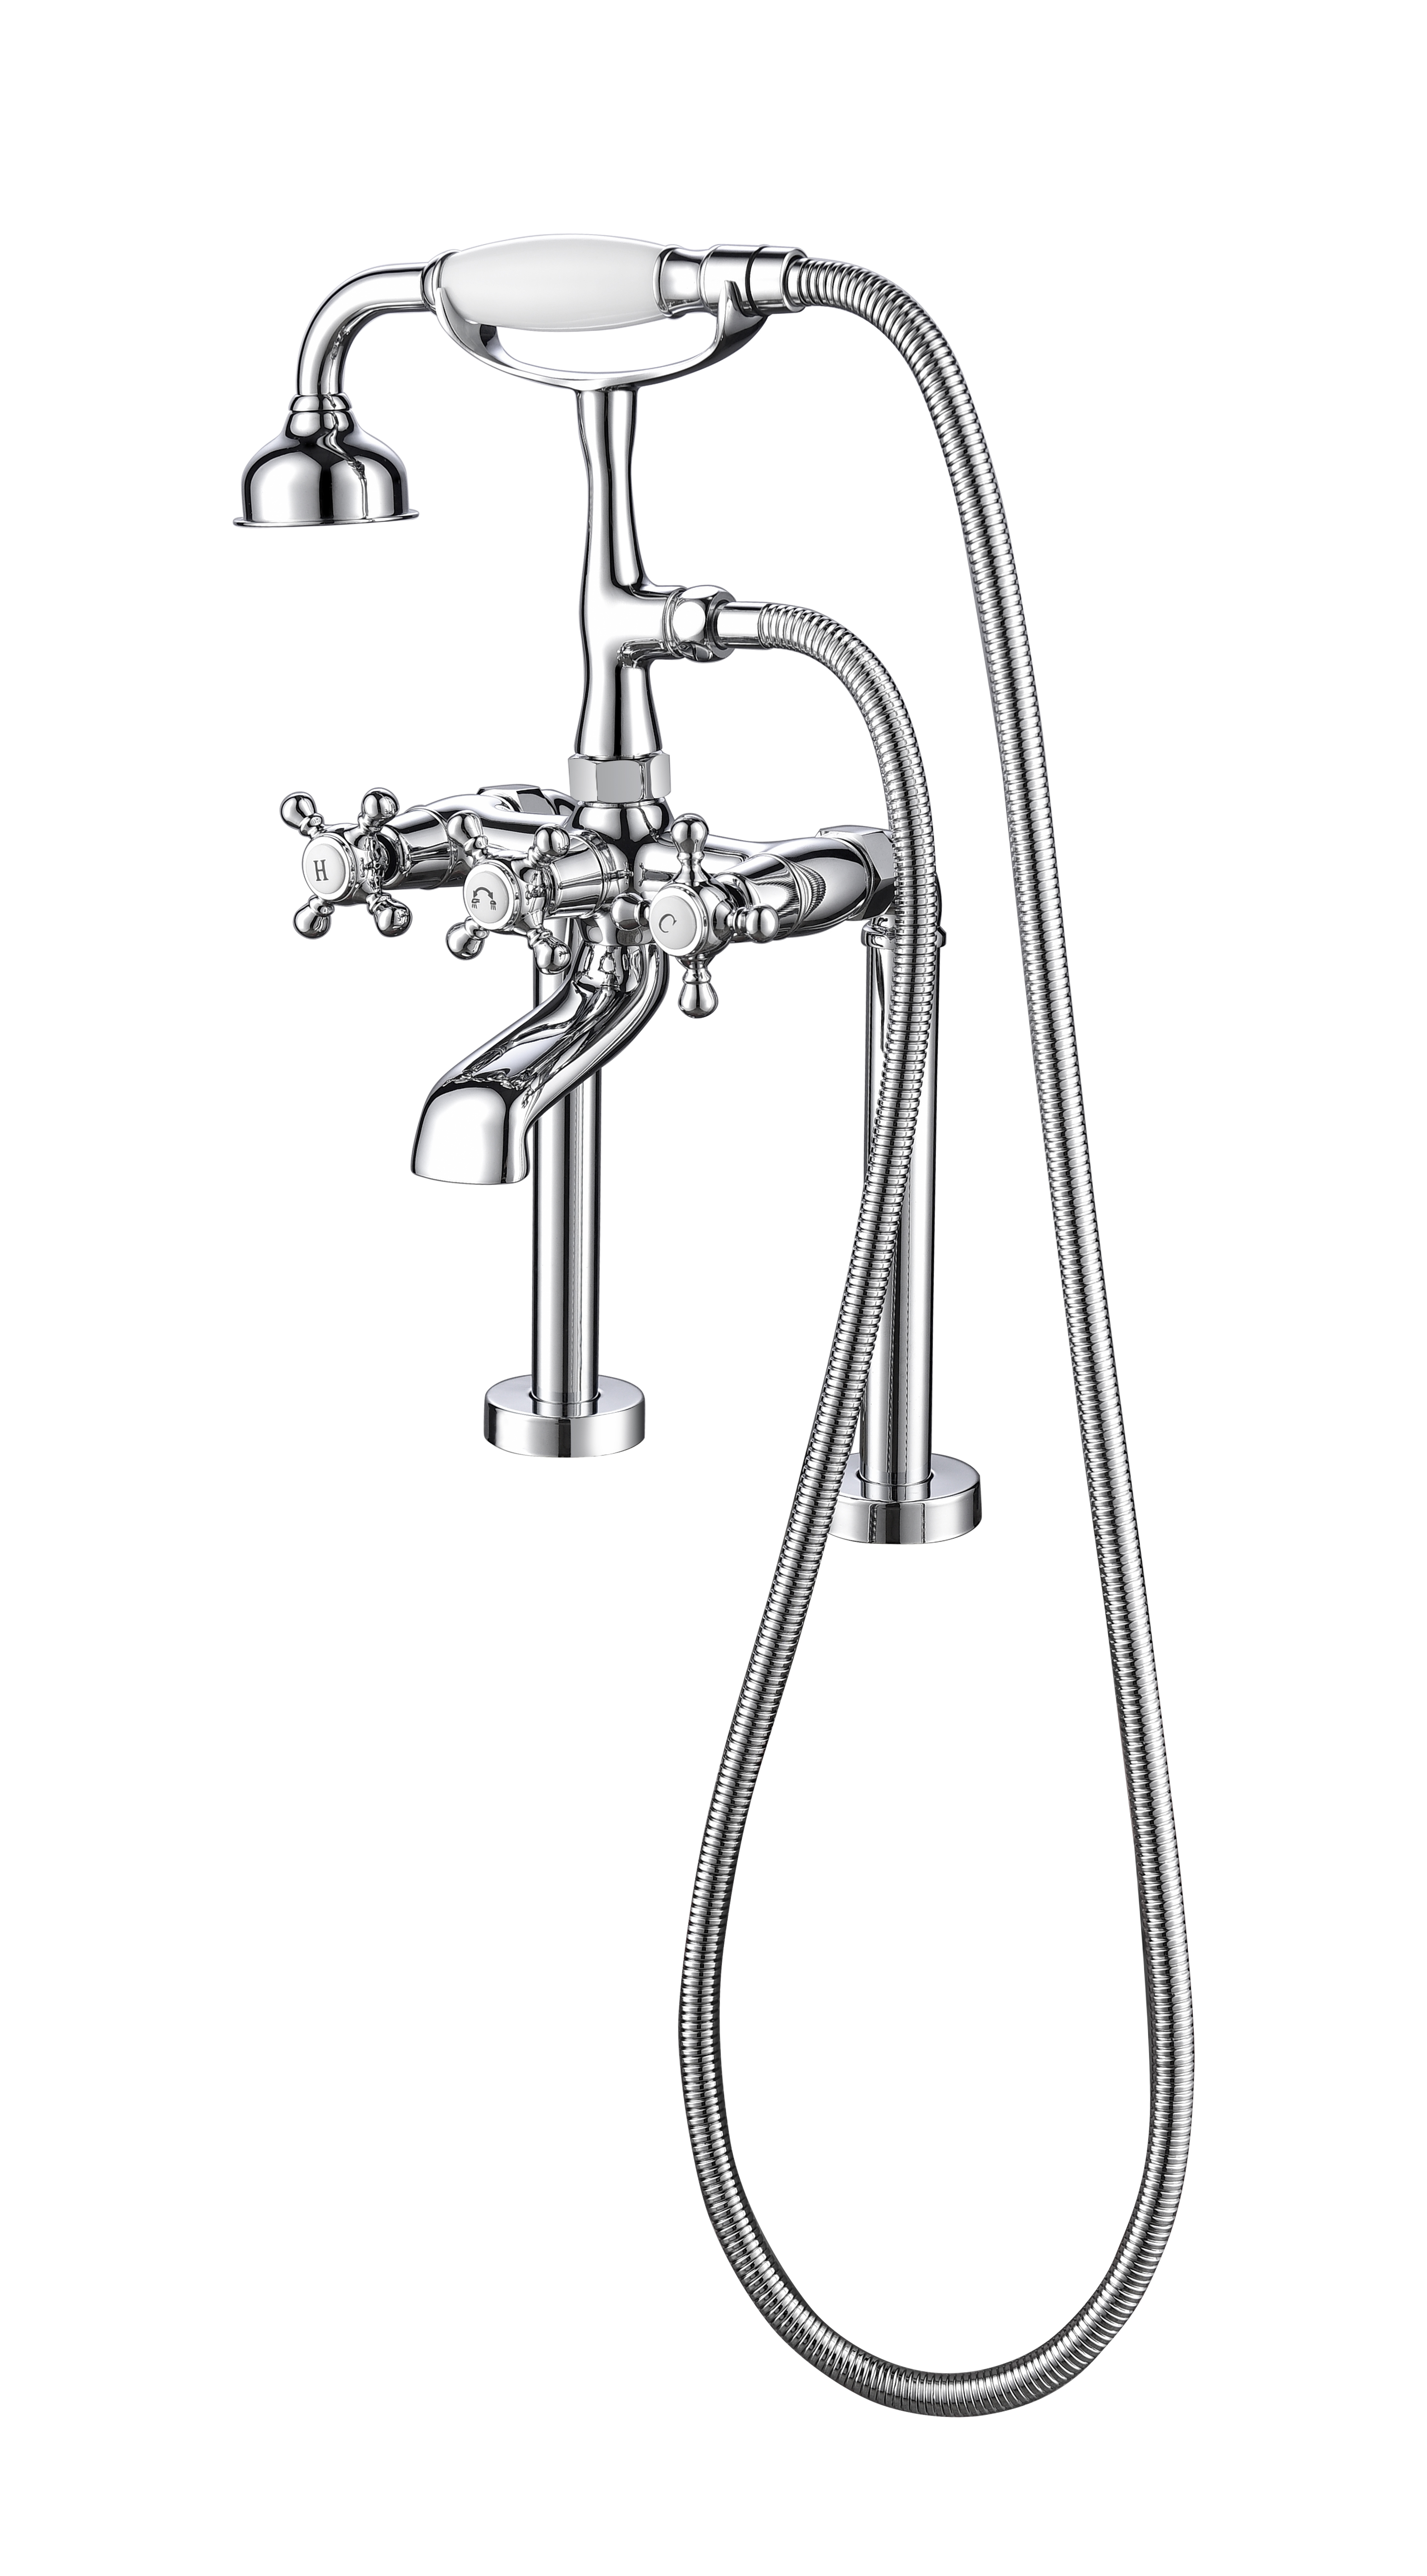 Unique Design Zinc Alloy Widespread Faucet Deck-Mount Roman Bathtub Faucet